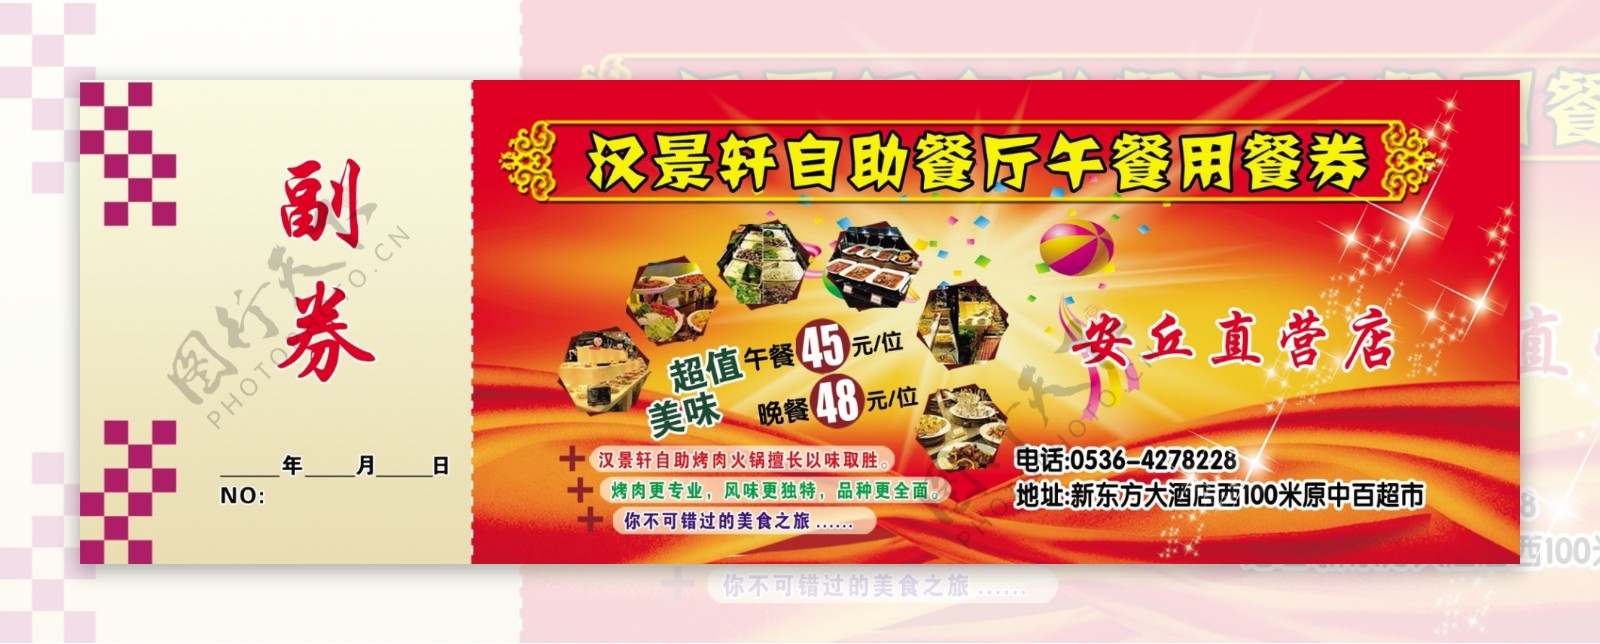 汉景轩烤肉自助午餐券图片